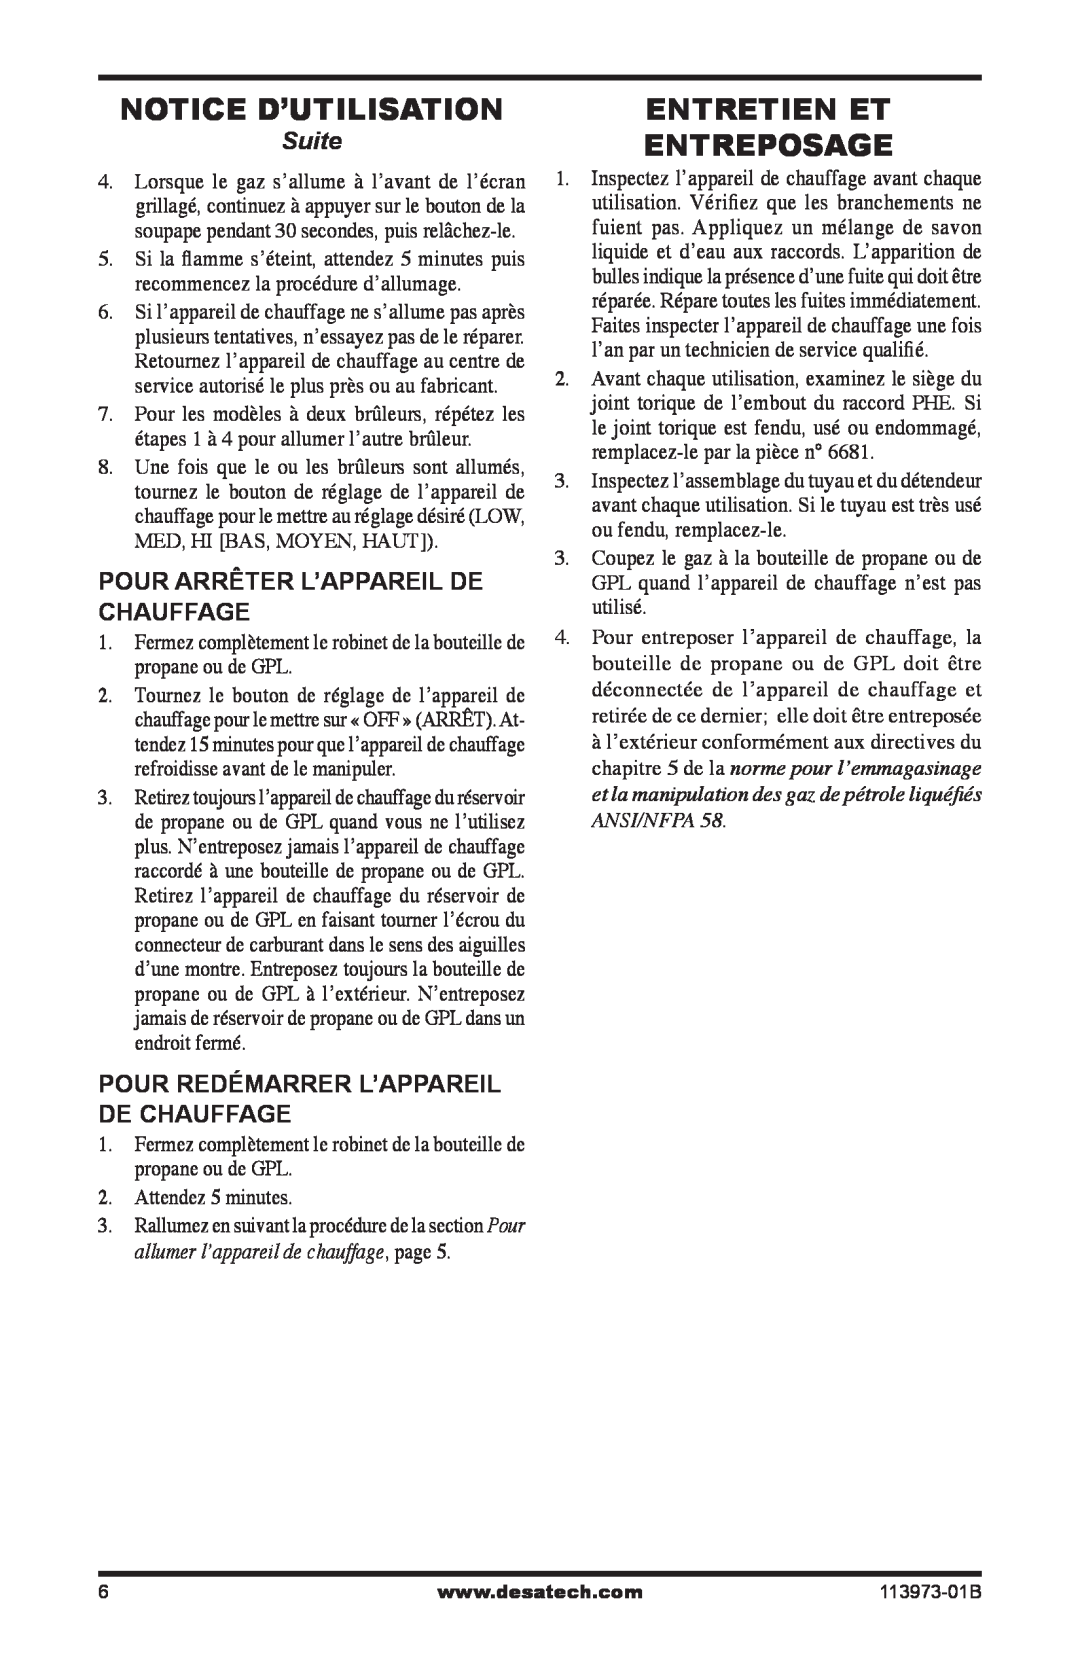 Desa AND TT30 10 owner manual Notice D’Utilisation, Entretien Et Entreposage, Suite, Pour Arrêter L’Appareil De Chauffage 